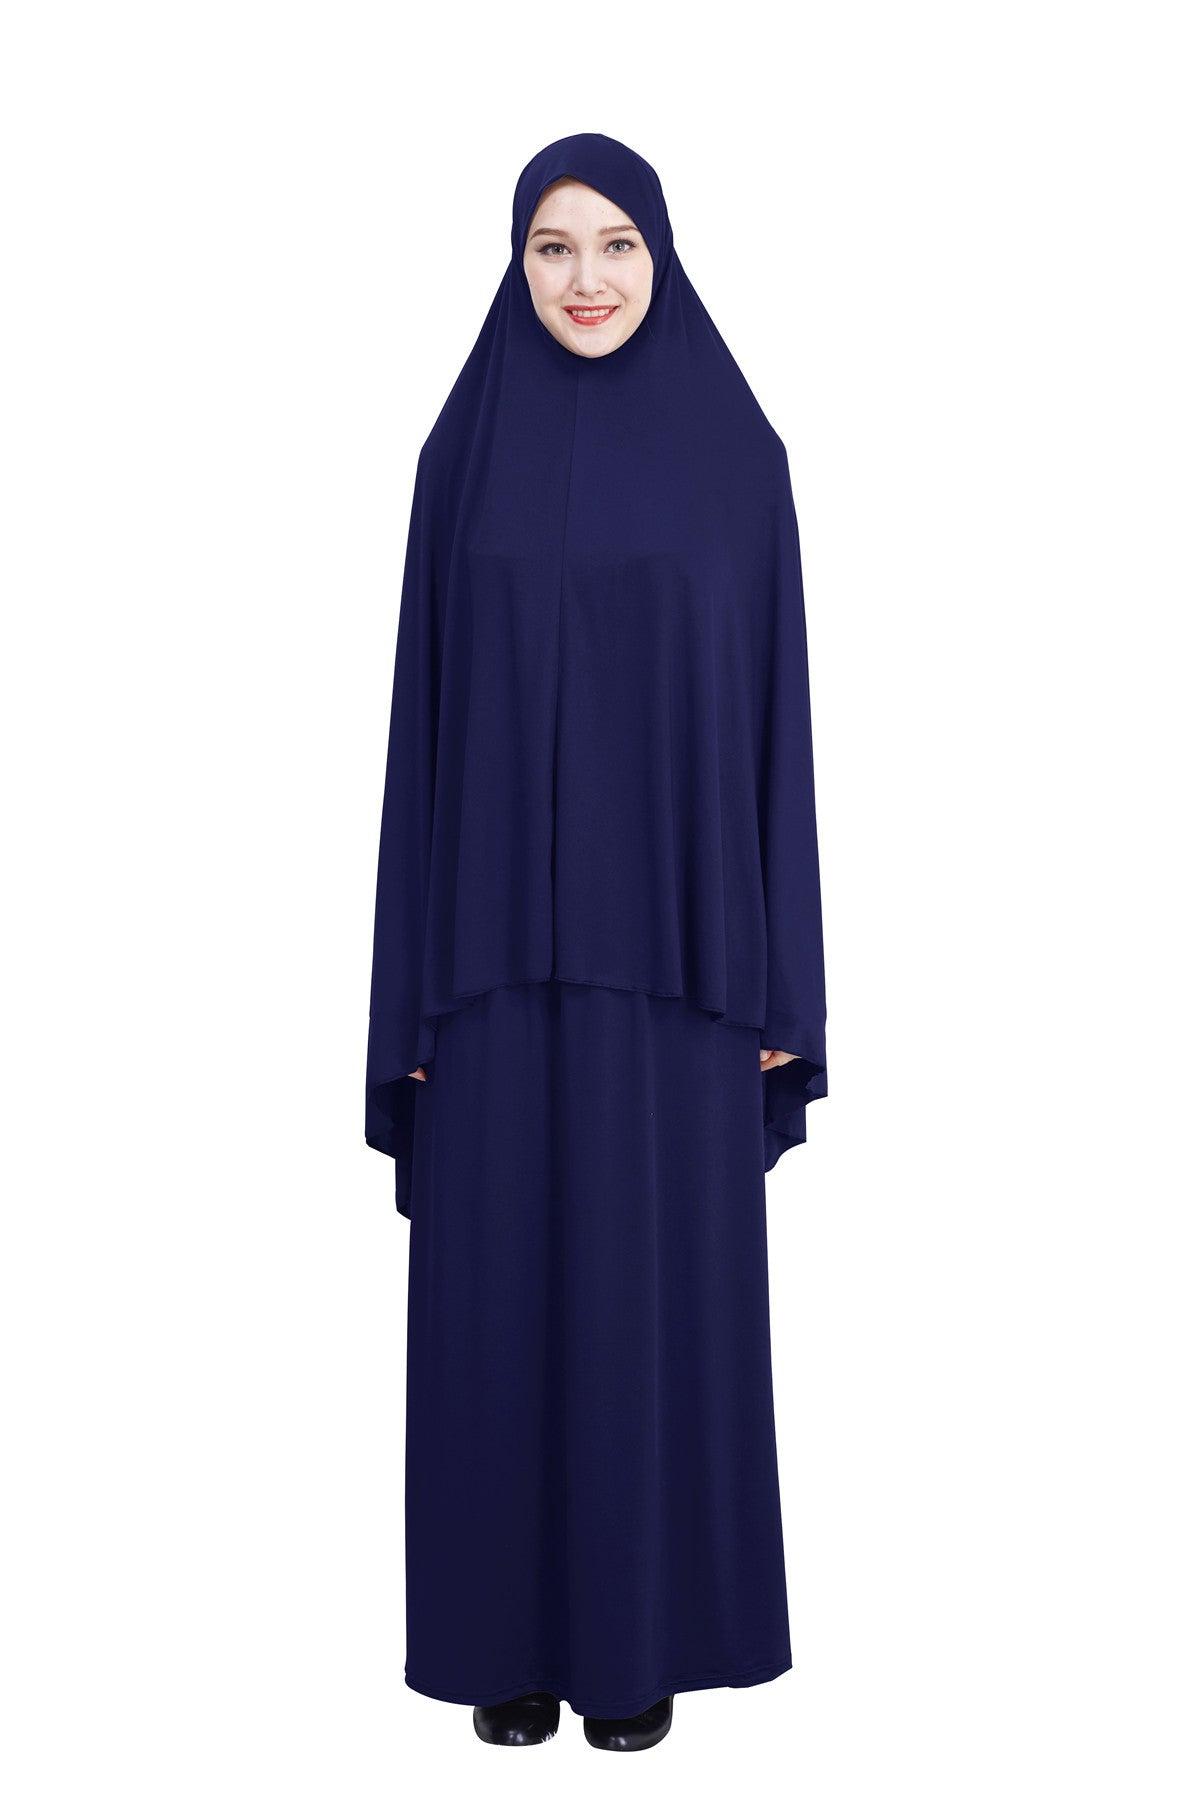 Muslim ladies hijab skirt suit prayer dress